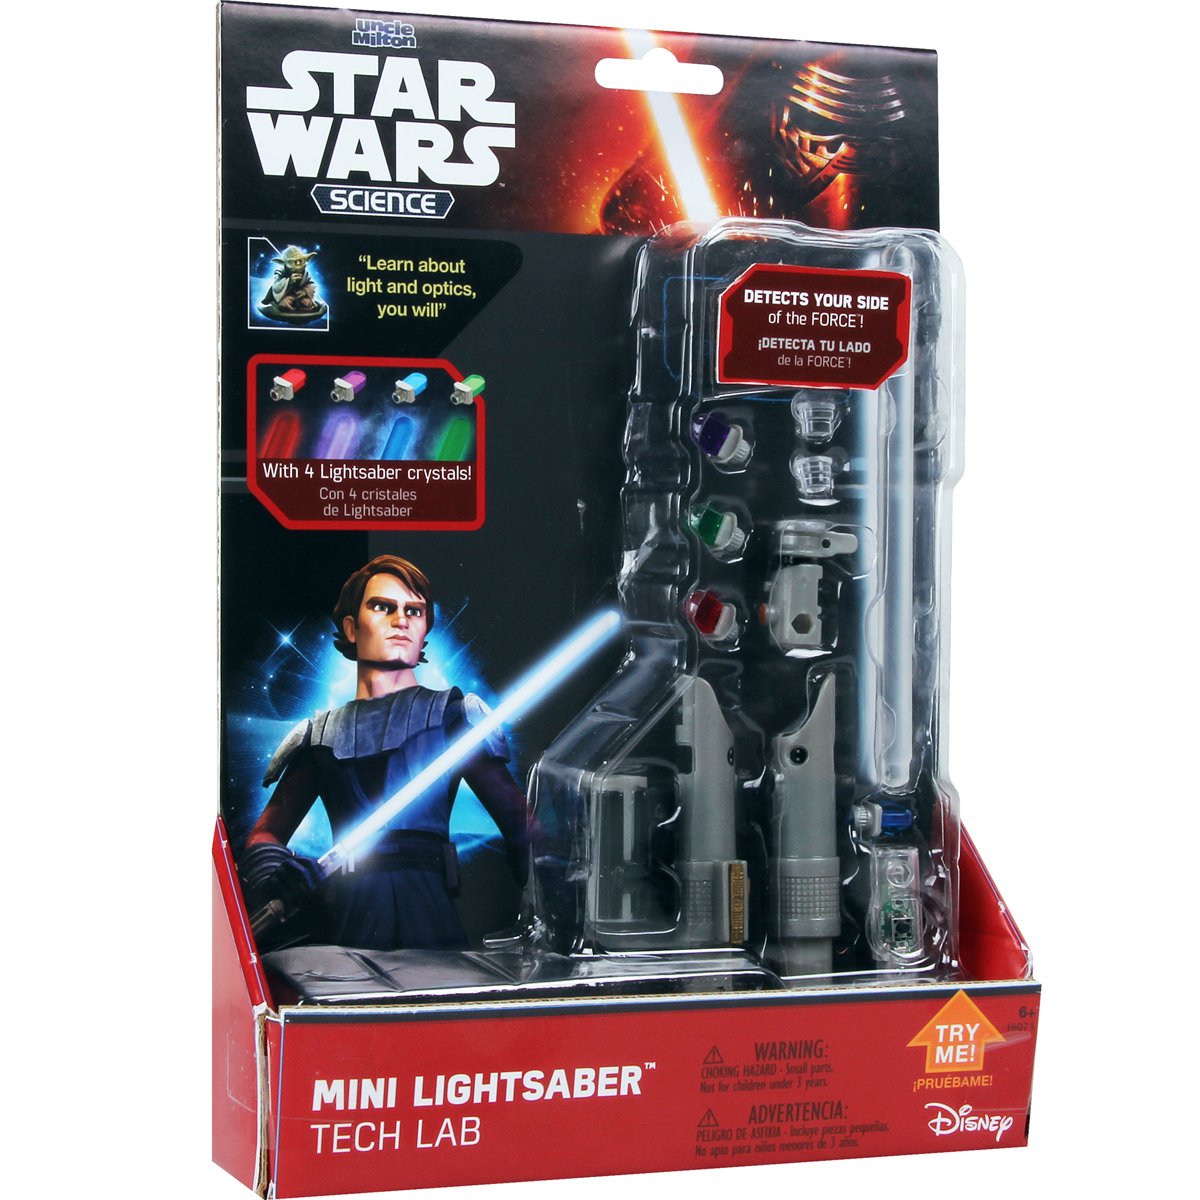 Mini Lightsaber Tech Lab Star Wars